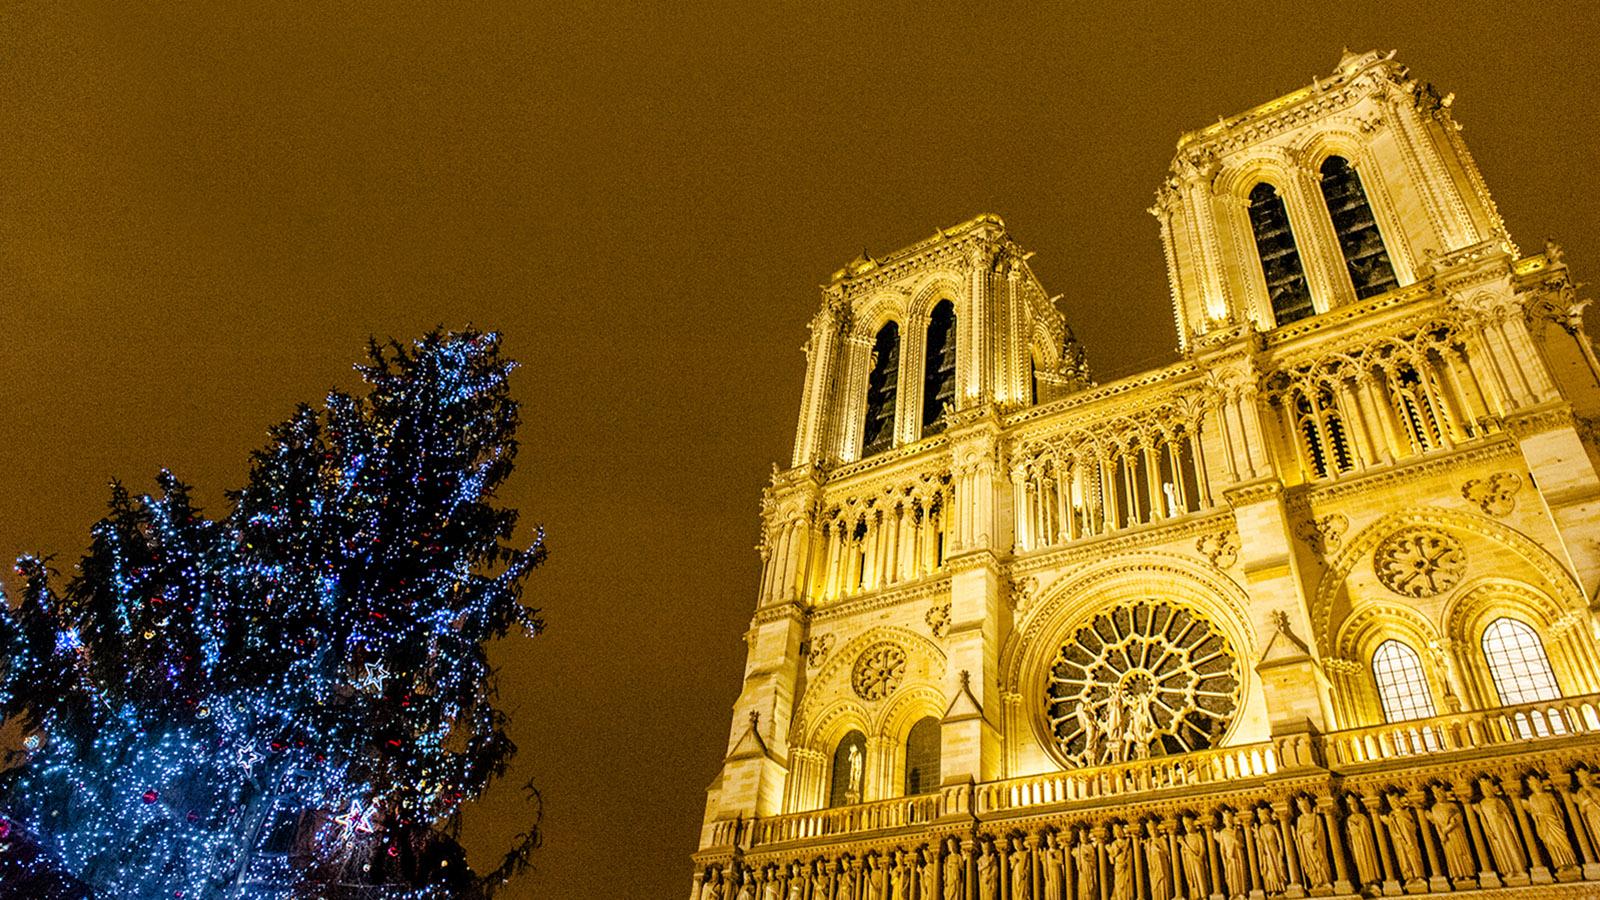 Weihnachten in Paris: Auch vor Notre-Dame erhebt sich ein bunt geschmückter Weihnachtsbaum. Foto: Hilke Maunder